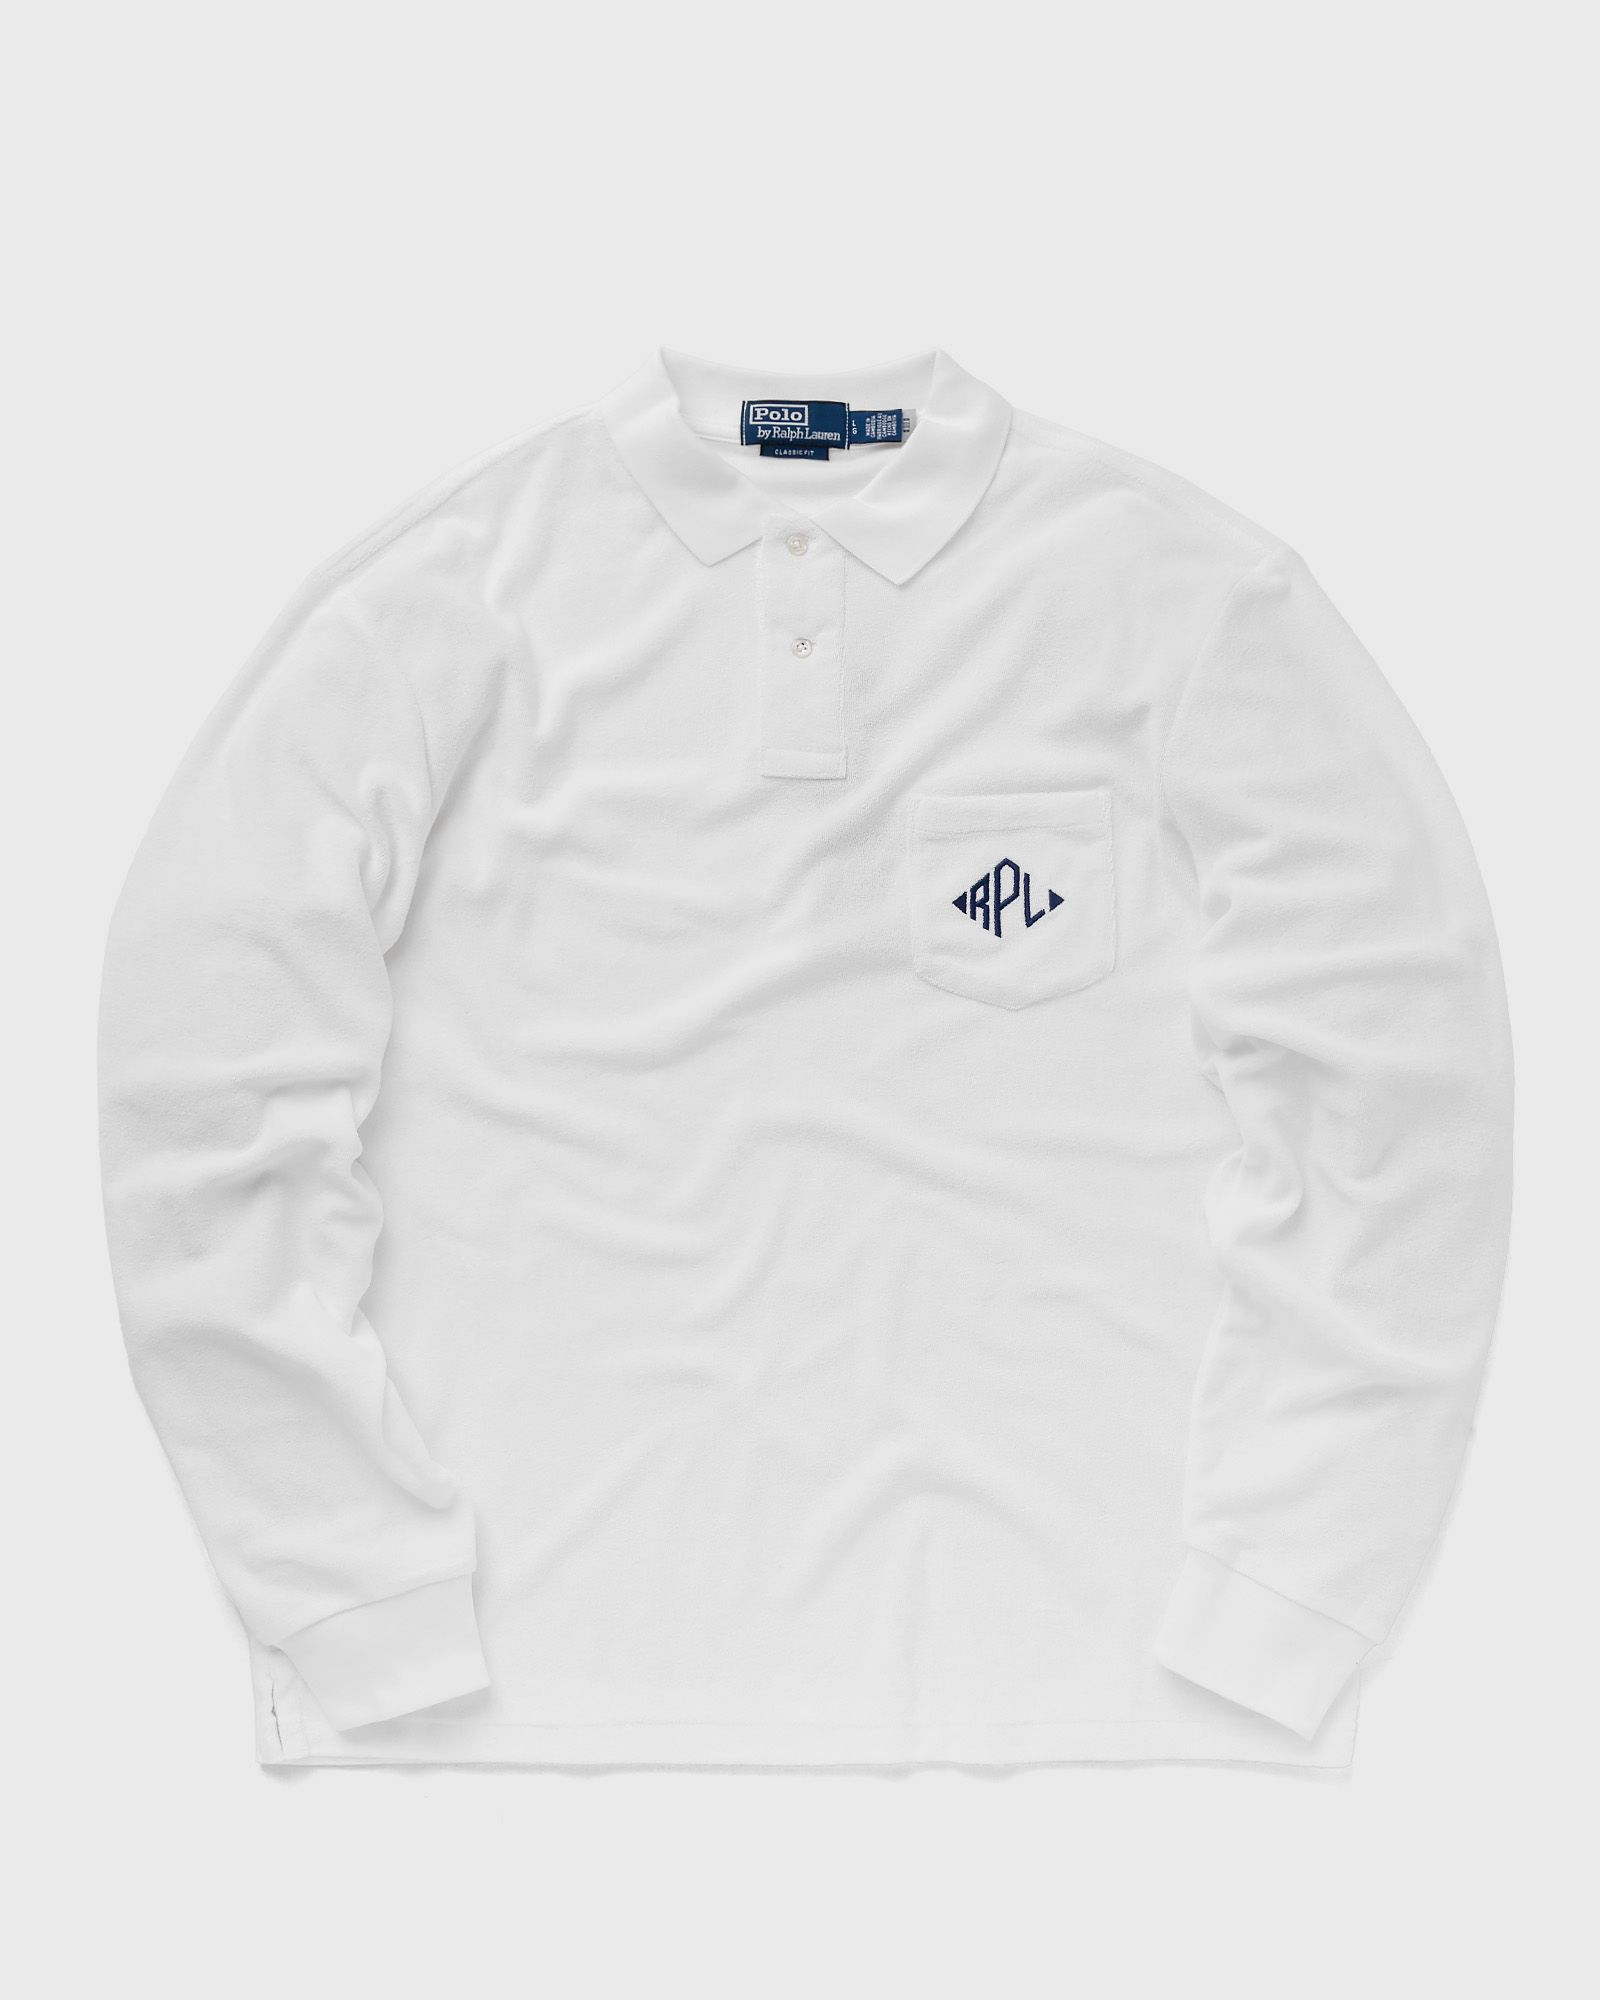 Polo Ralph Lauren - long sleeve-polo shirt men polos white in größe:xxl